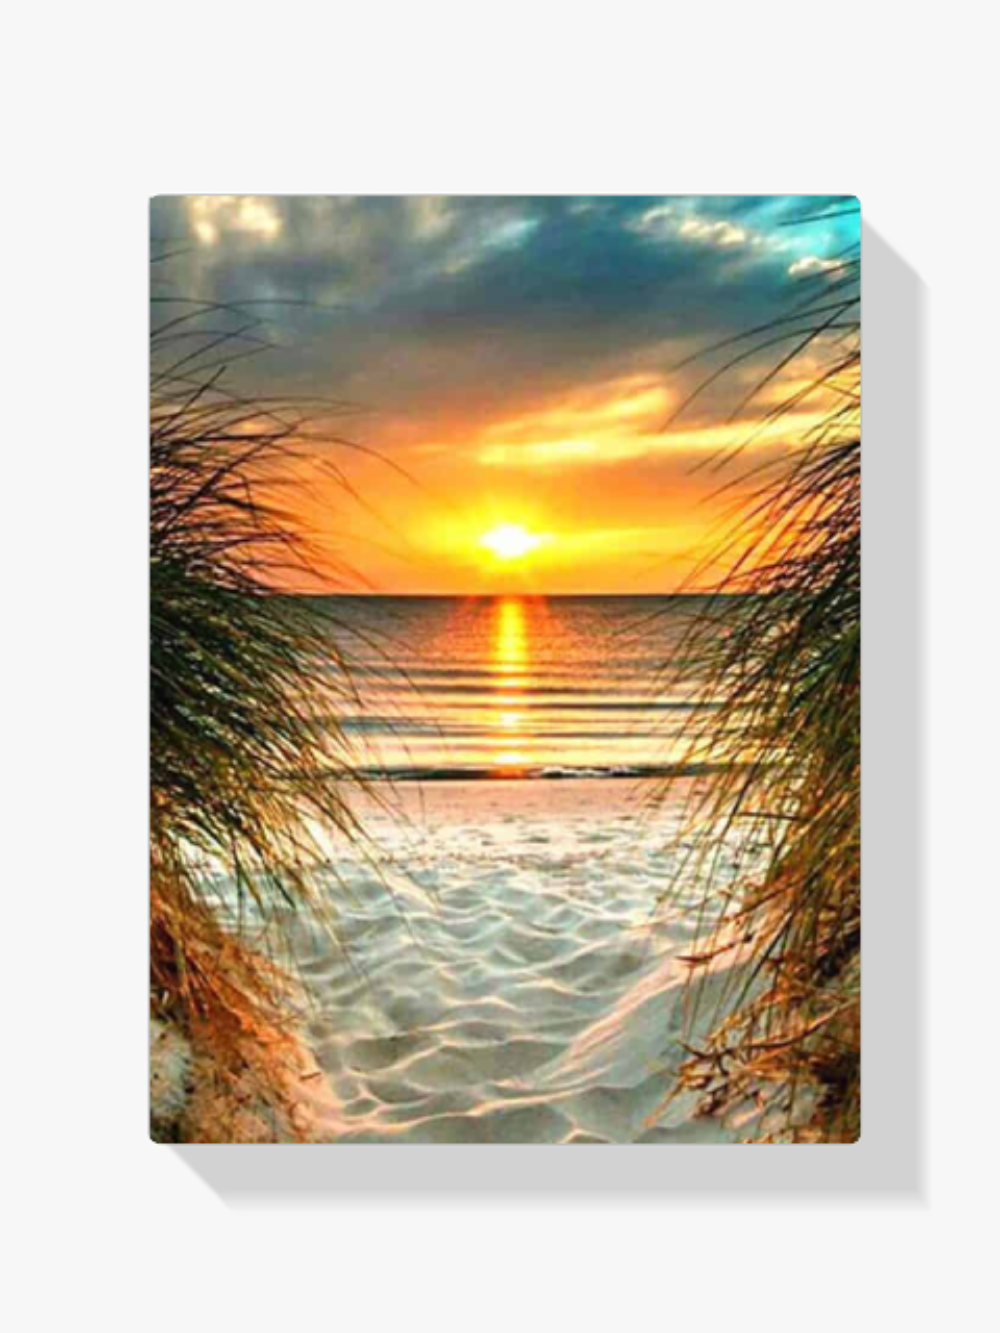 5D Diamond Painting Strand mit untergehender Sonne – SEOS Shop ®